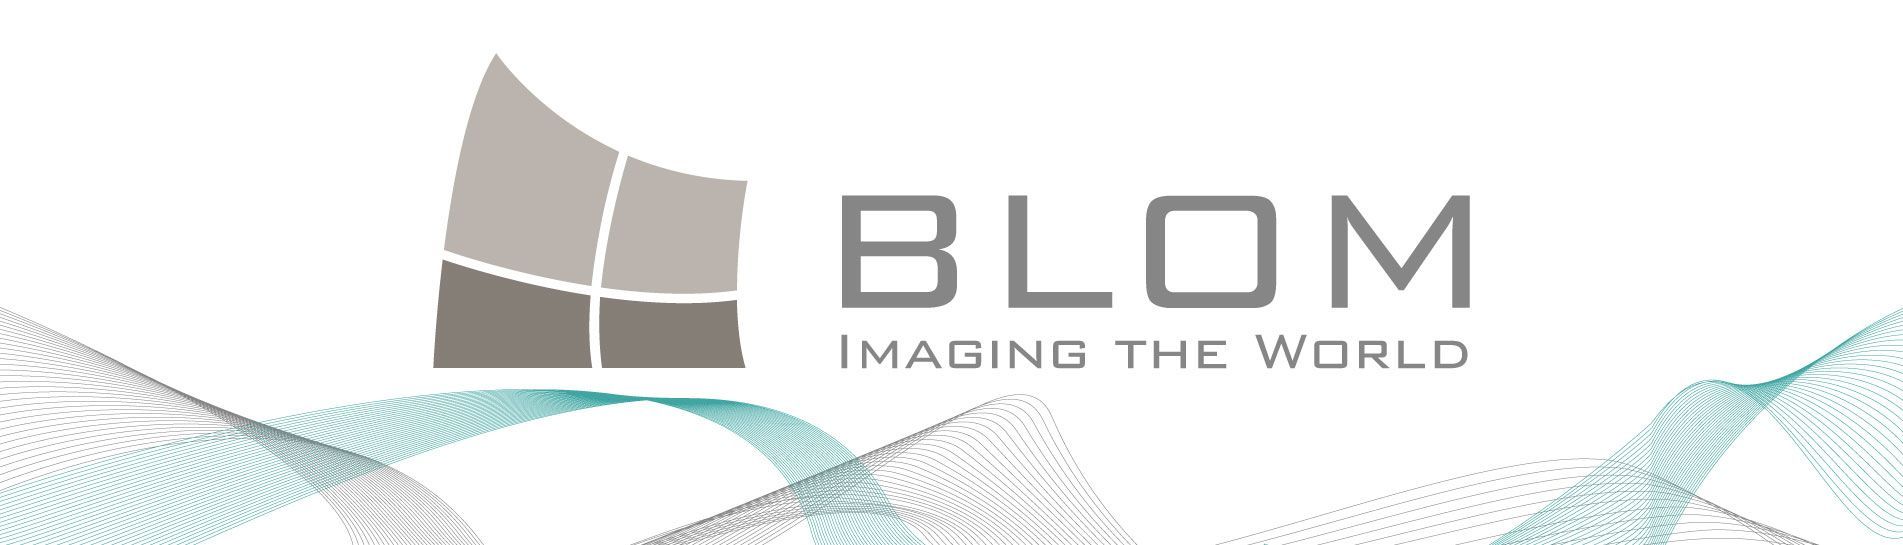 Das Logo von Blom Imaging the World ist auf weißem Hintergrund abgebildet.